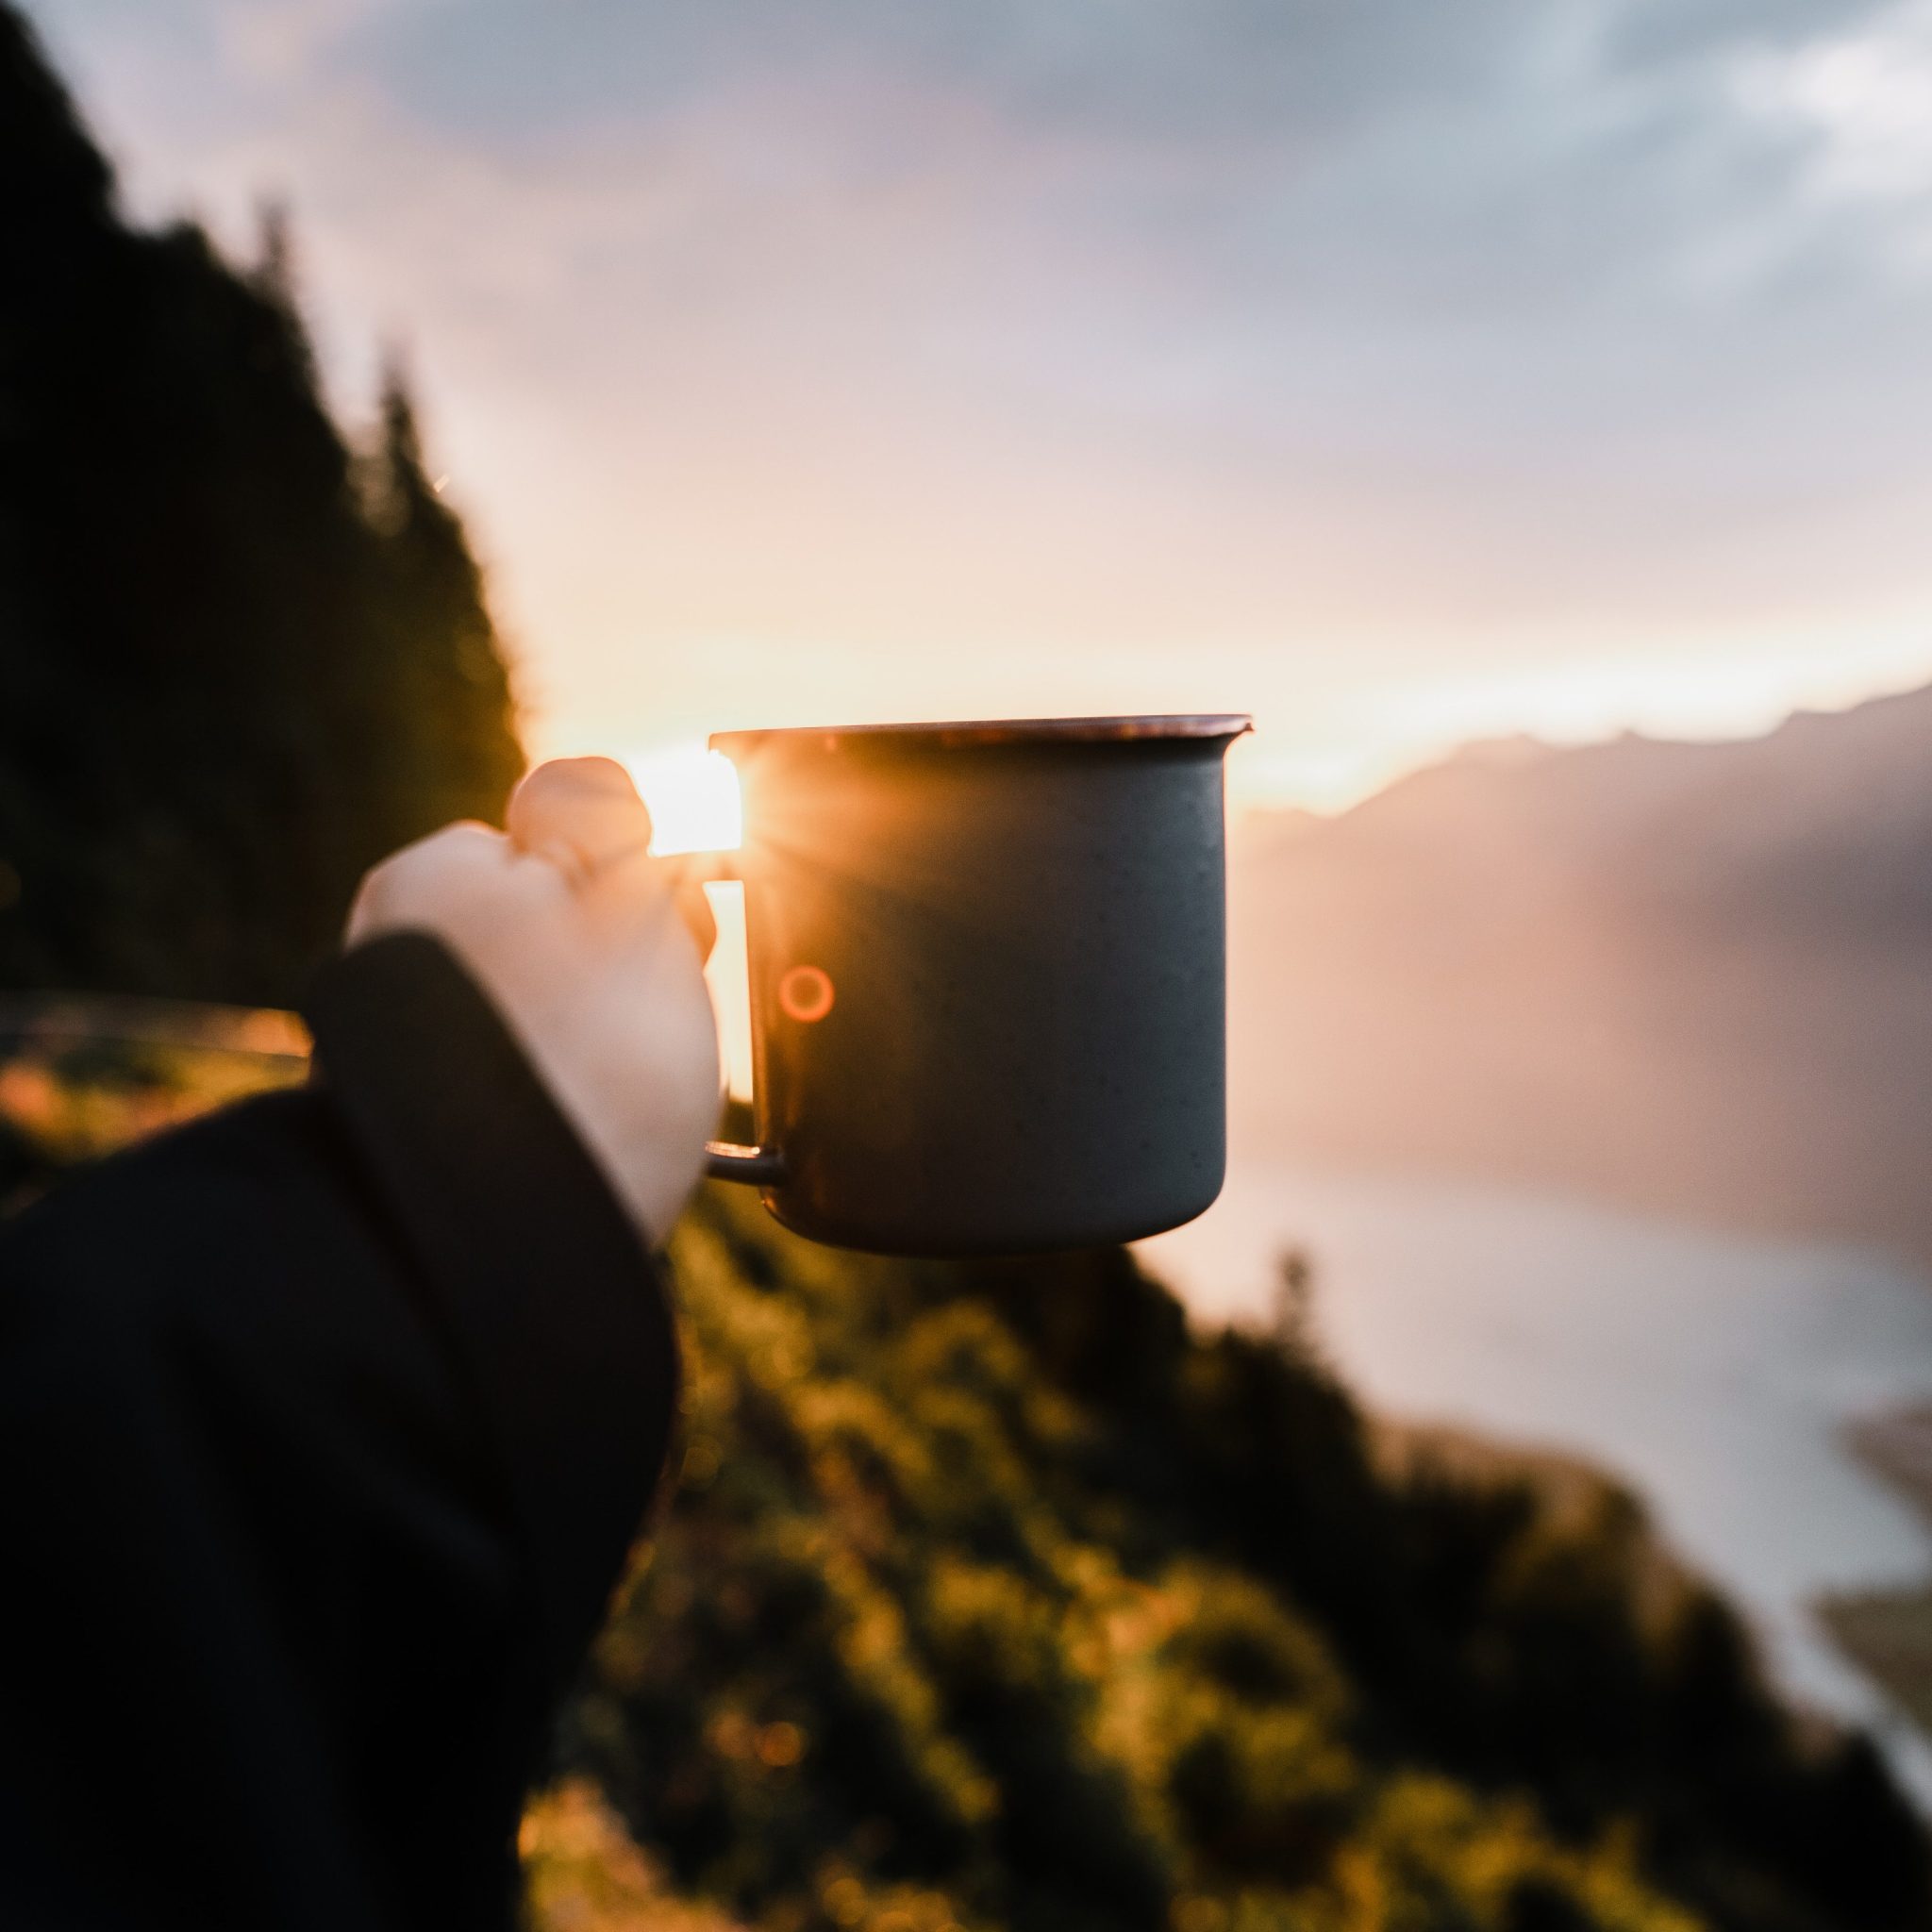 Camp Kaffee - Kaffeetasse und Sonnenaufgang im Hintergrund